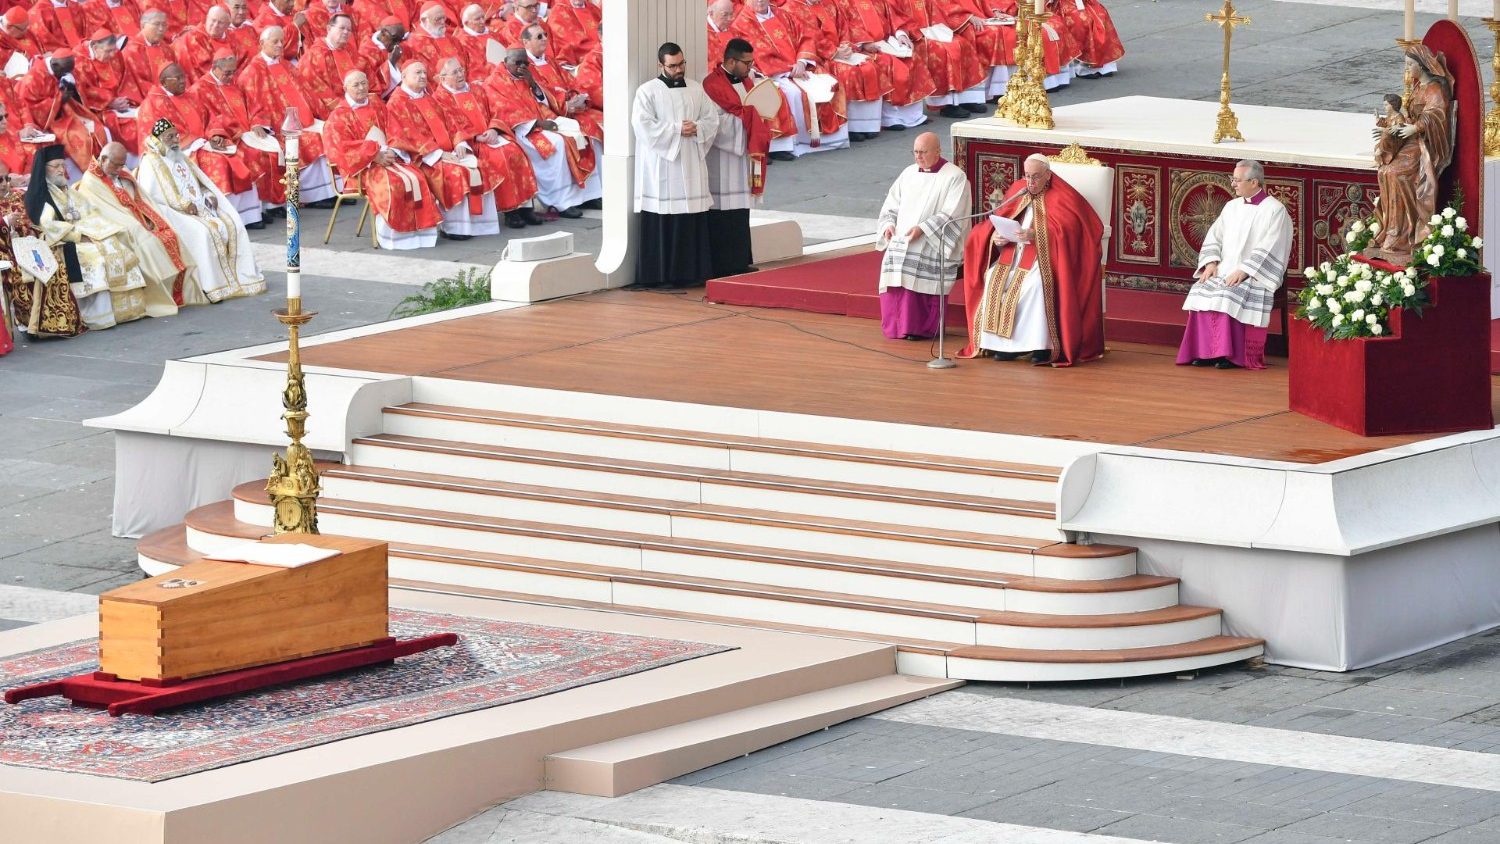 Despedida de Benedicto XVI: “Padre, en tus manos ponemos su espíritu”